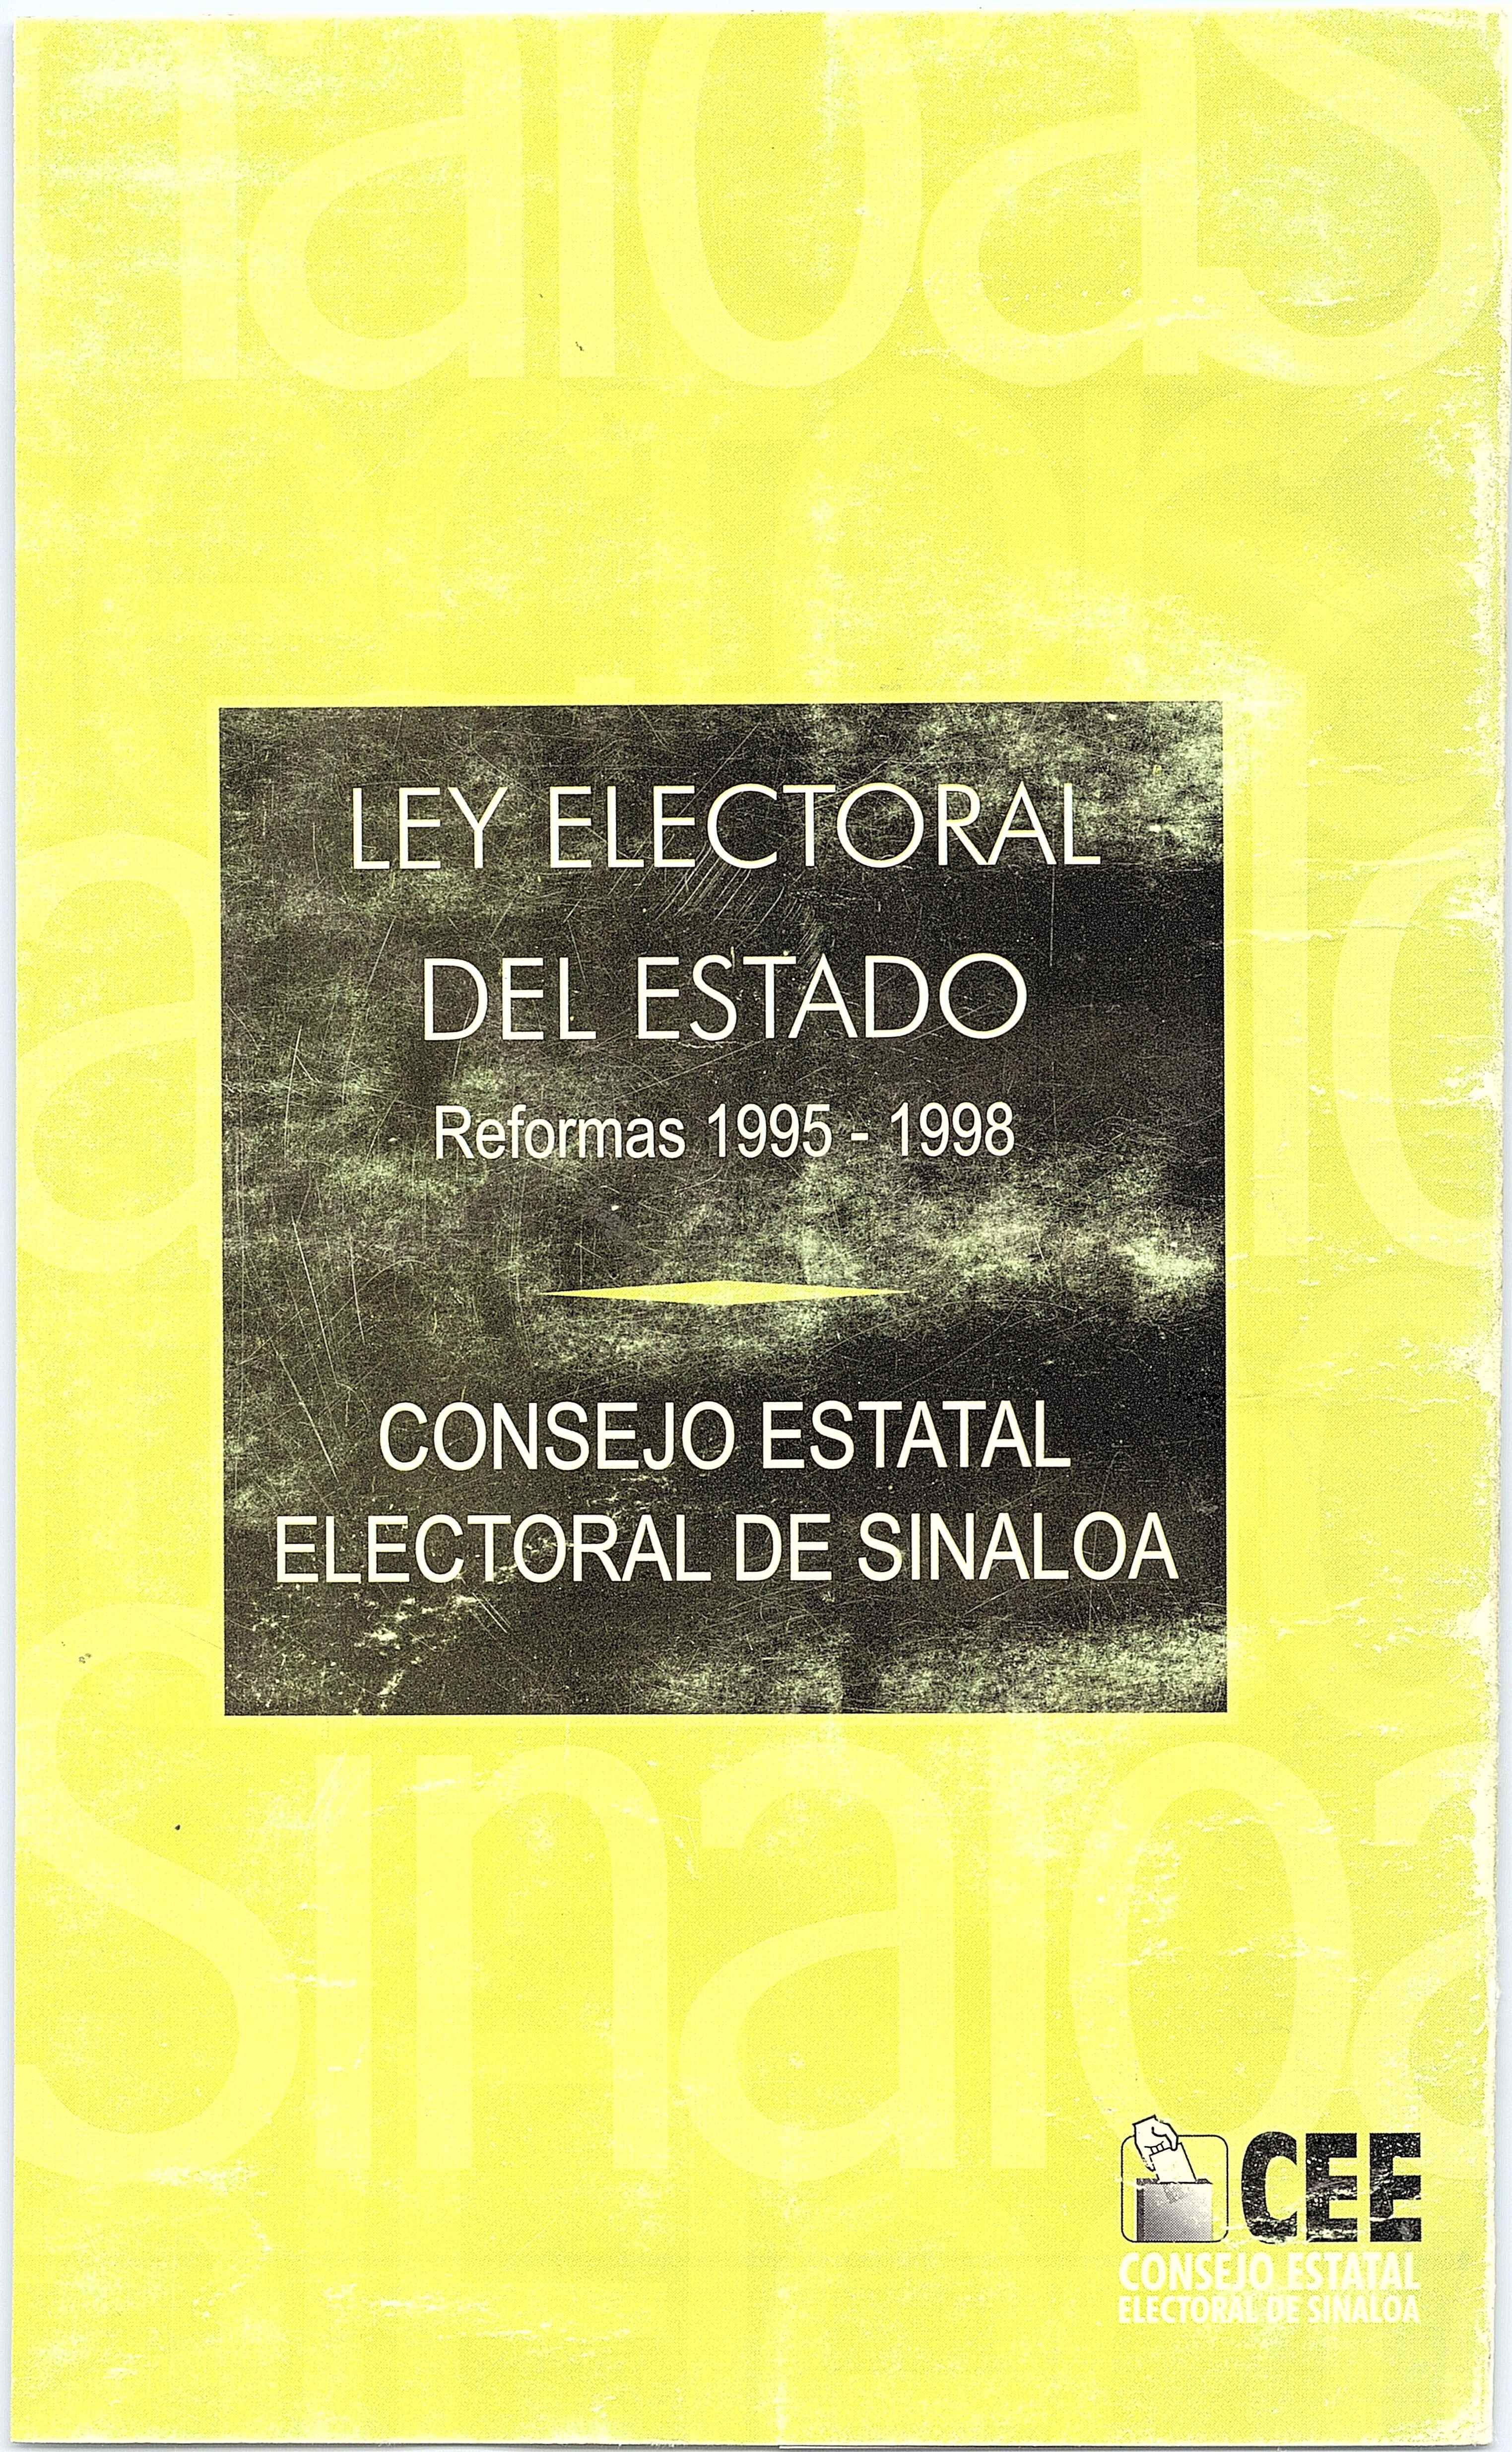 Ley Electoral del Estado de Sinaloa 1995-98